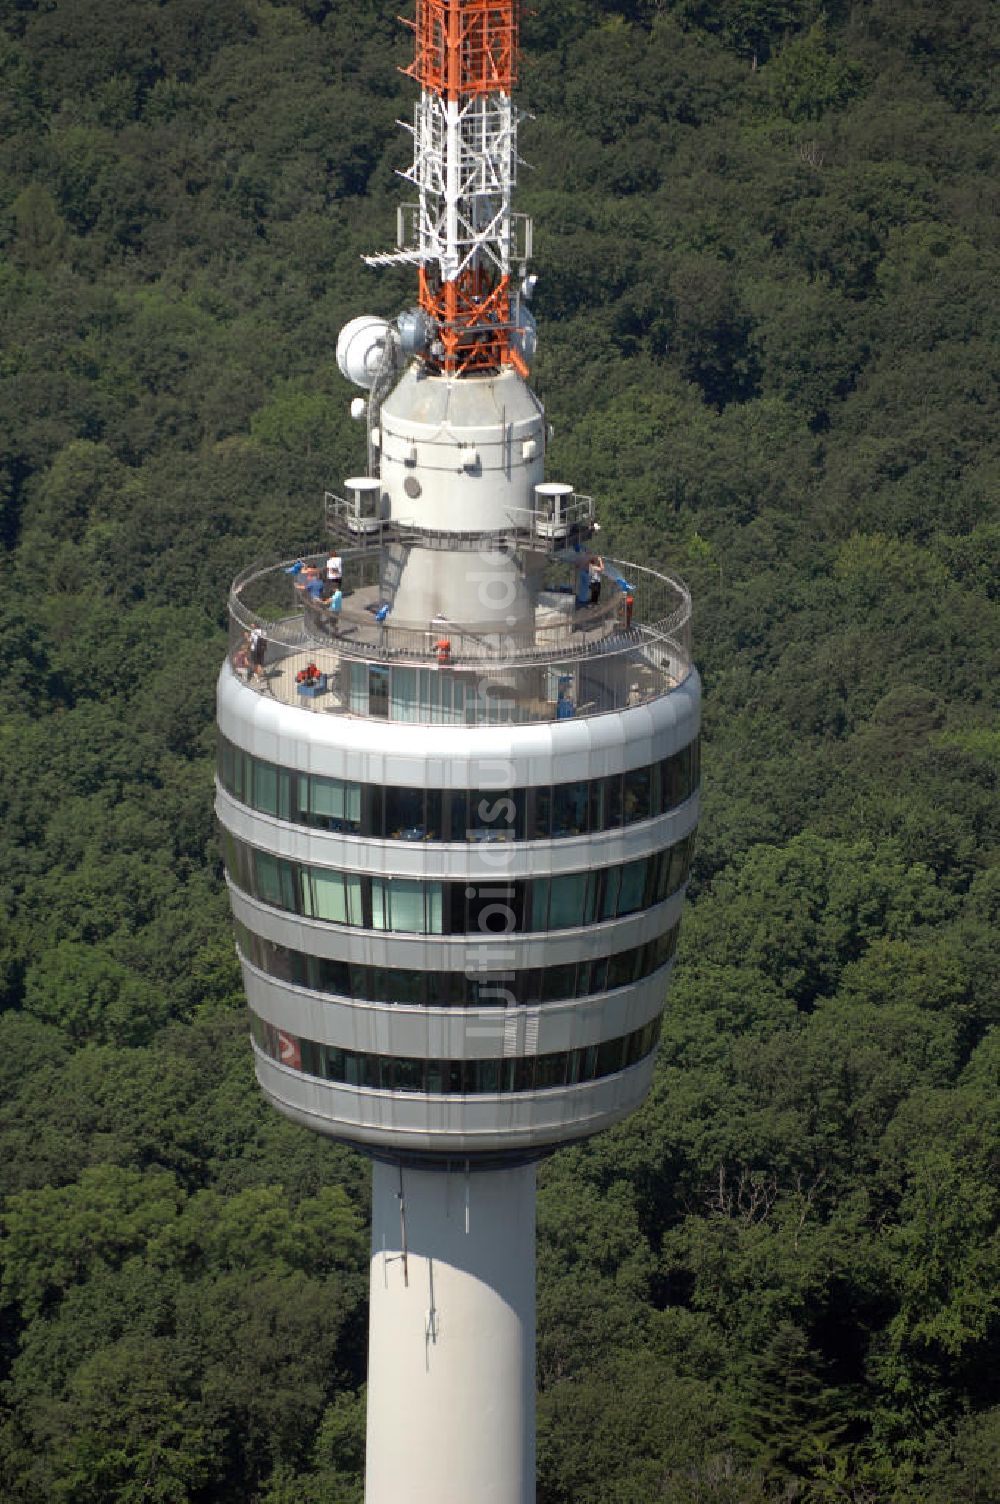 STUTTGART von oben - Fernsehturm Stuttgart